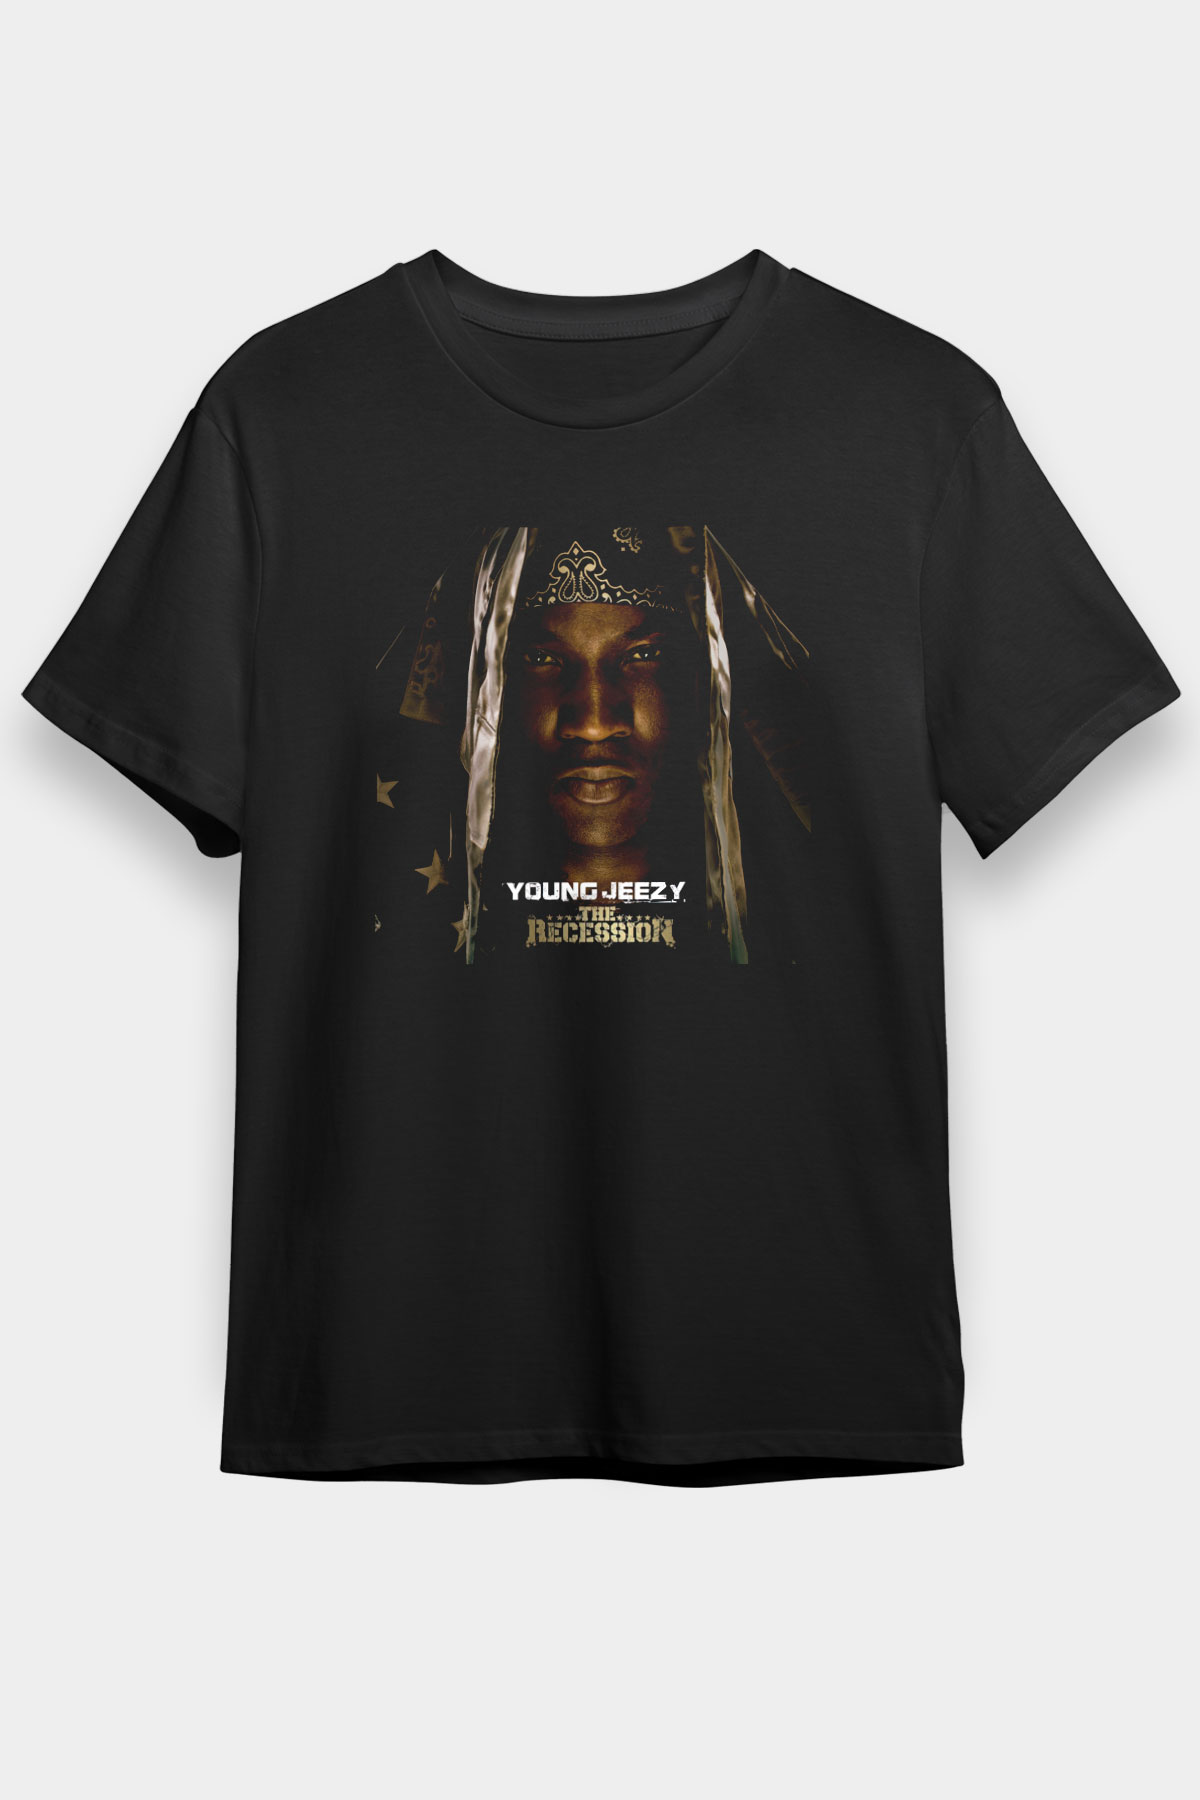 Young Jeezy T shirt,Hip Hop,Rap Tshirt 04/